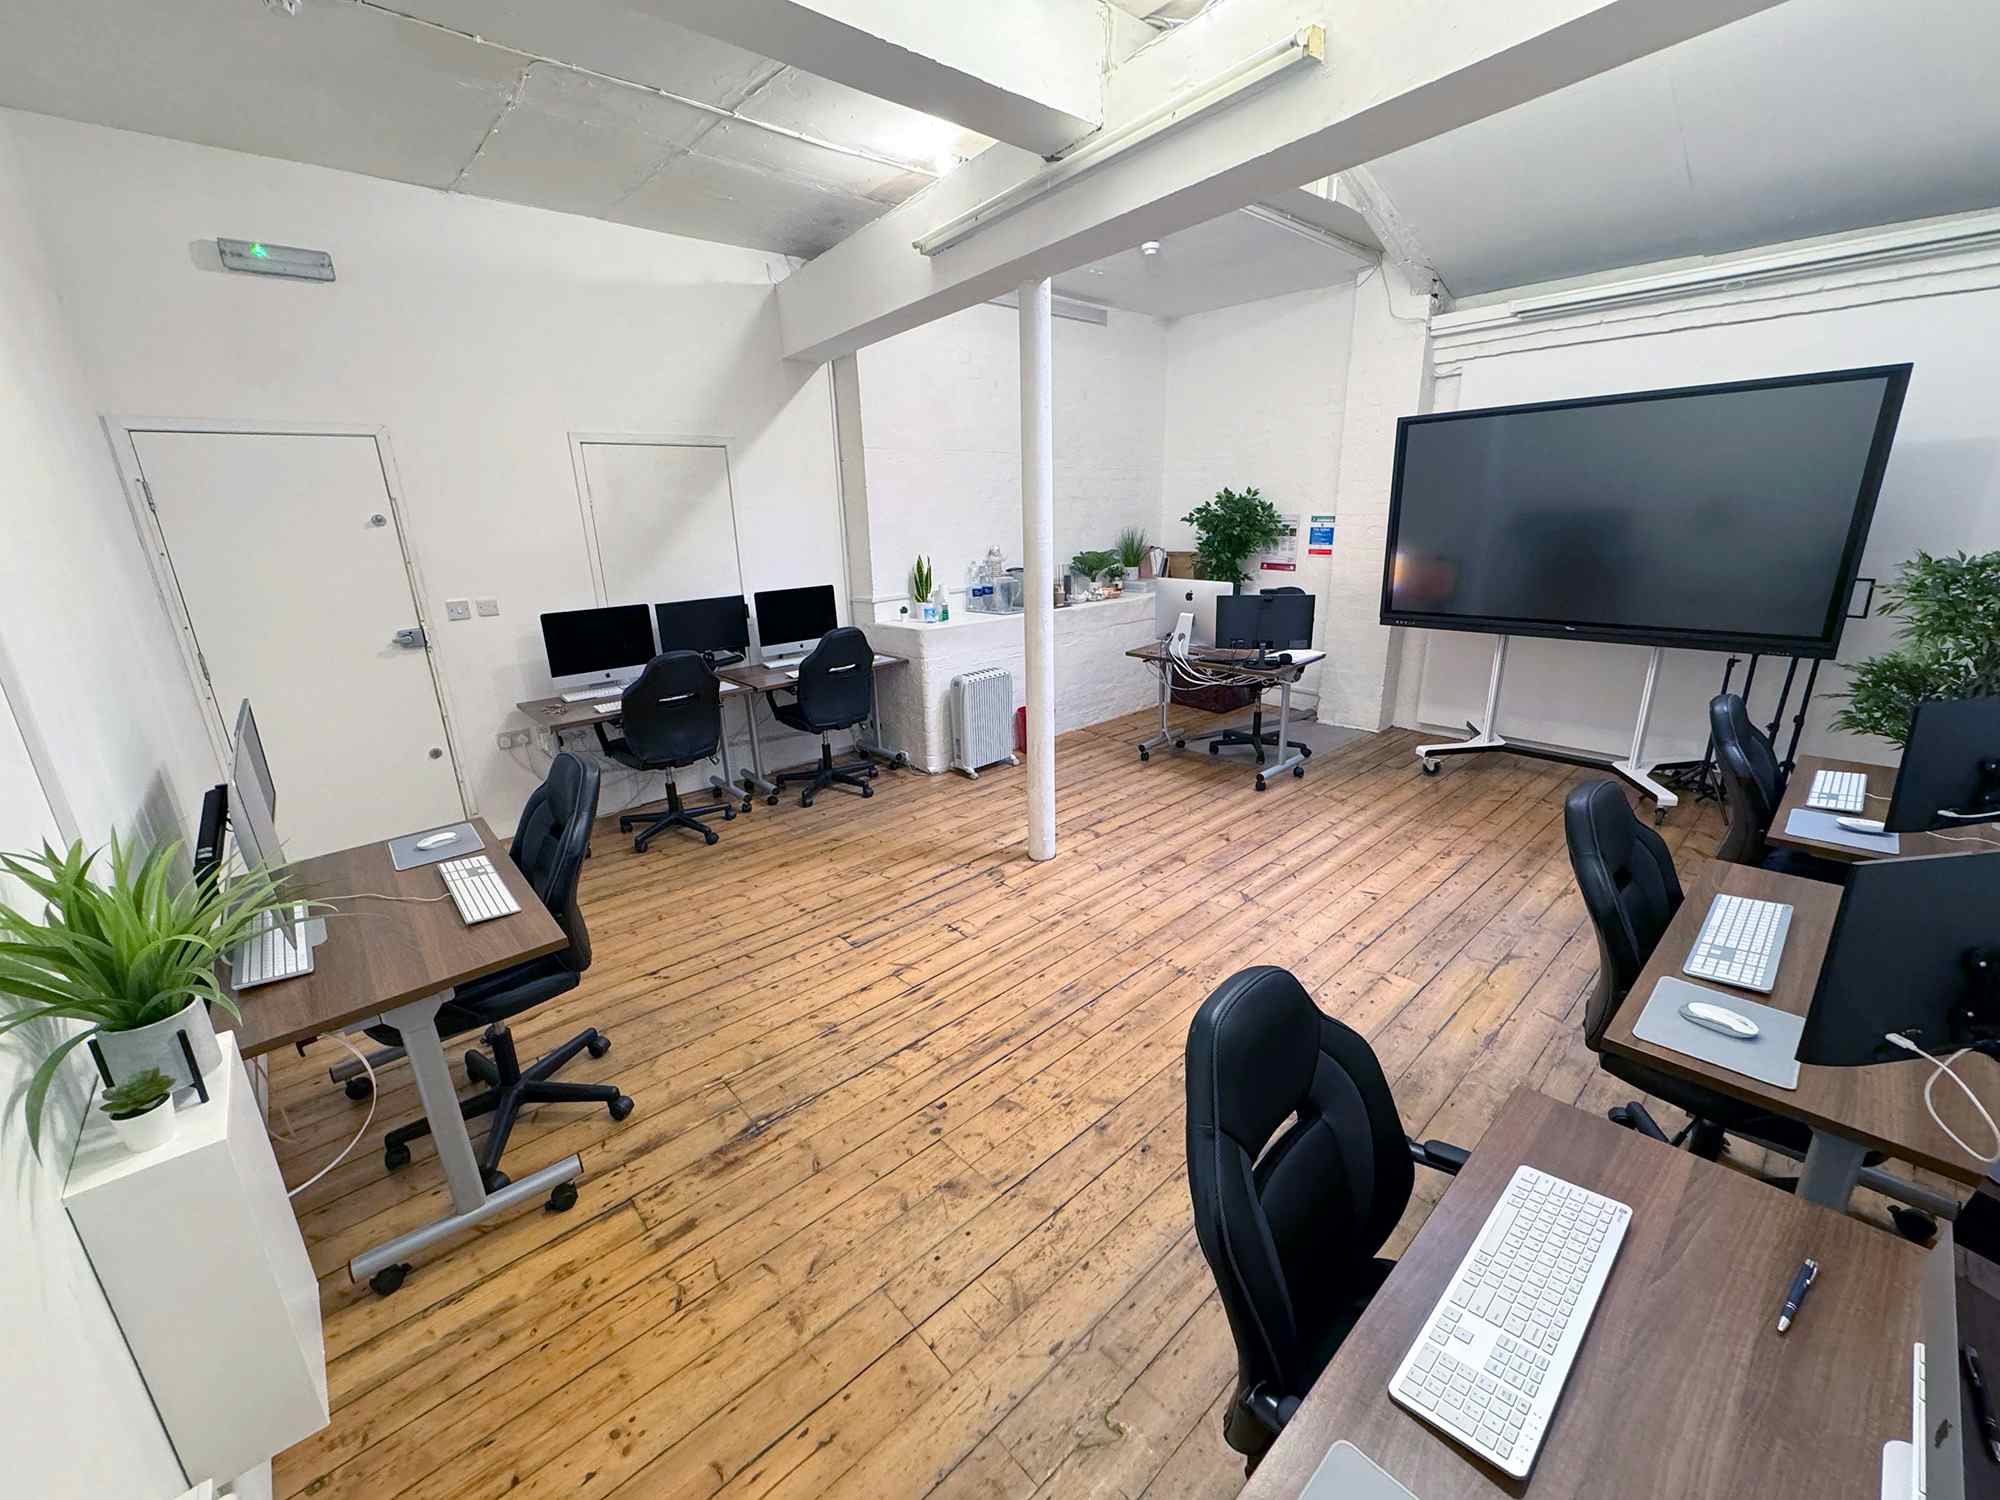 Digital Media Training Room, Platform